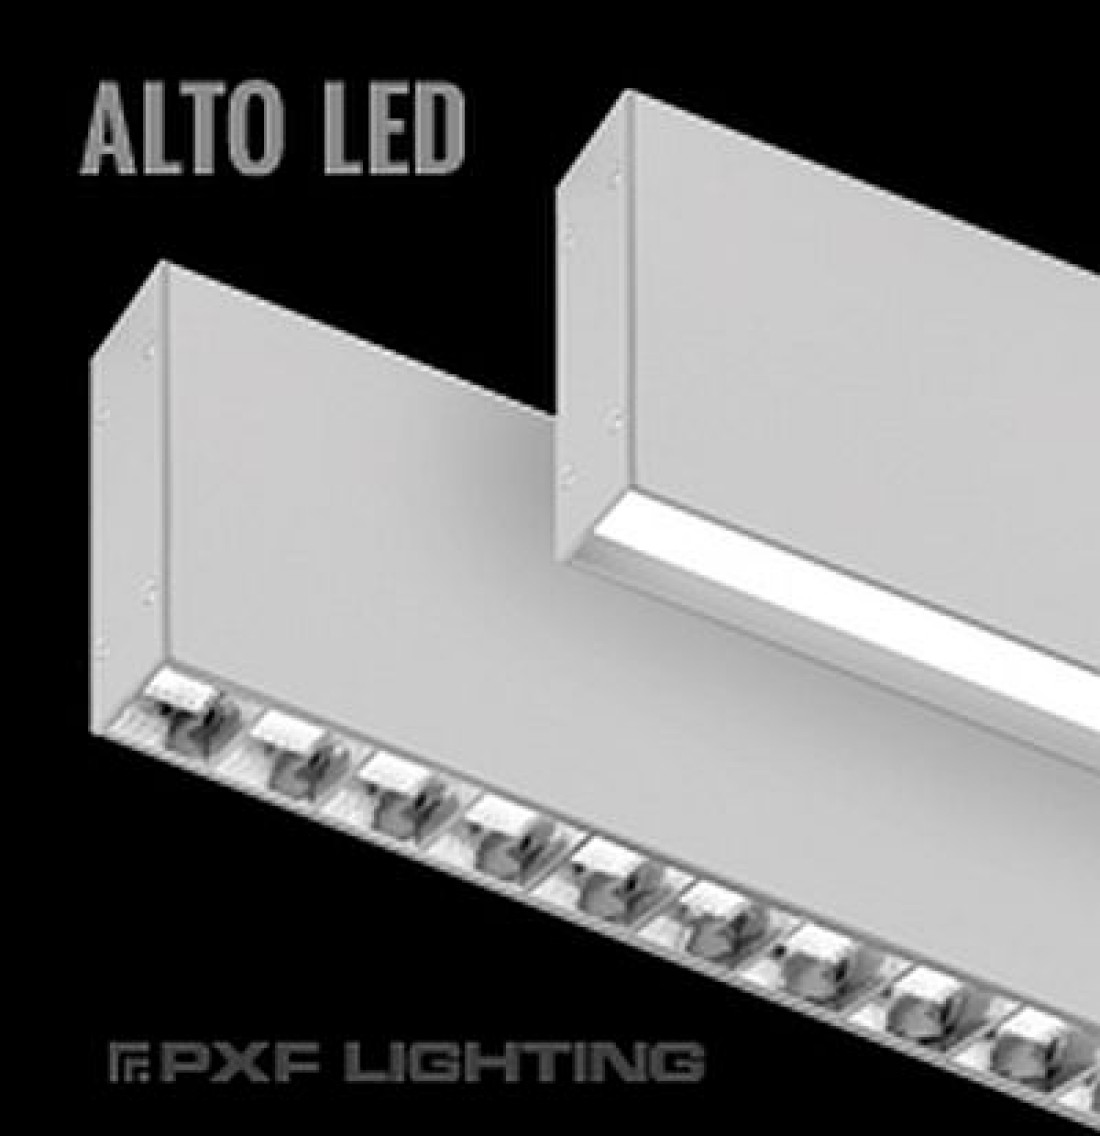 ALTO LED – nowoczesna oprawa systemowa produkcji PXF Lighting